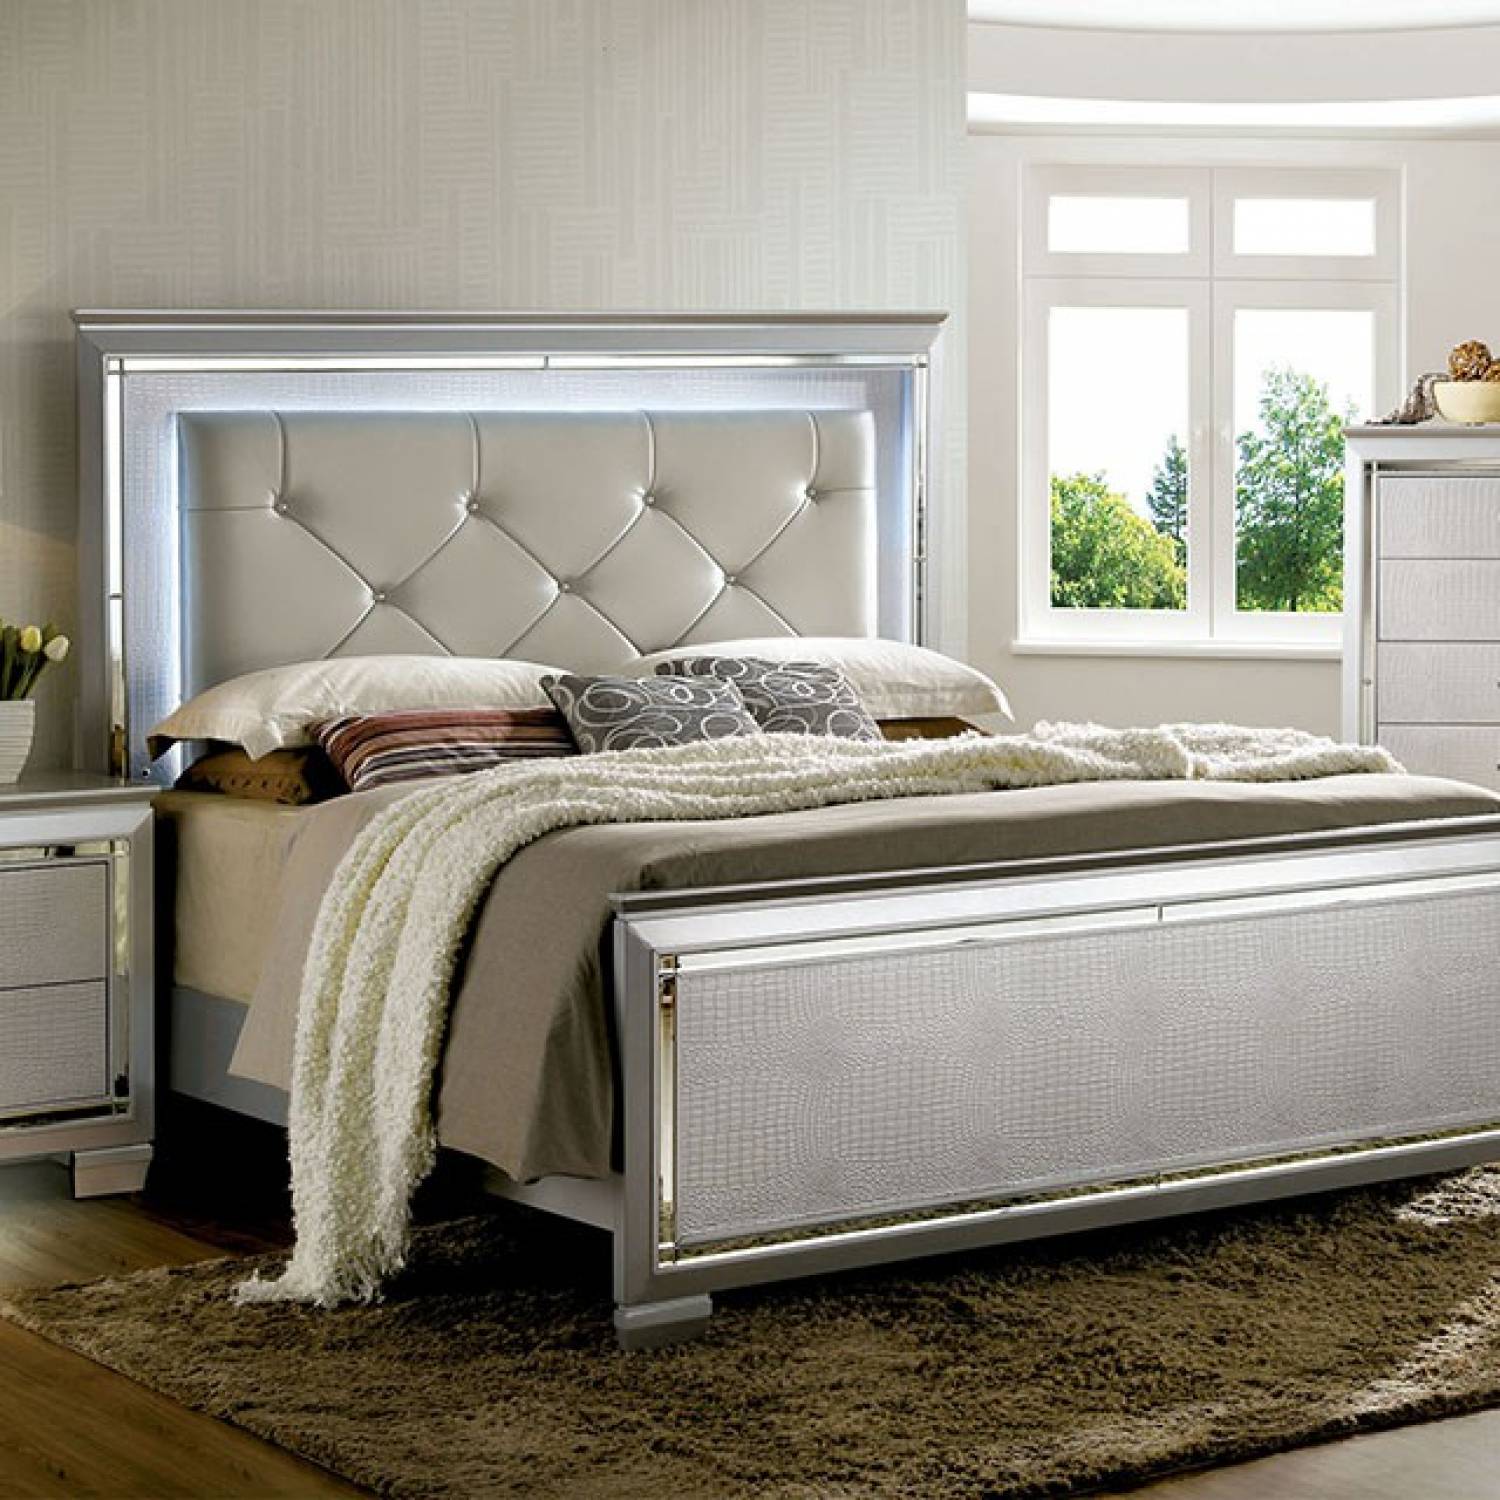 Кровать двуспальная цвет серебро